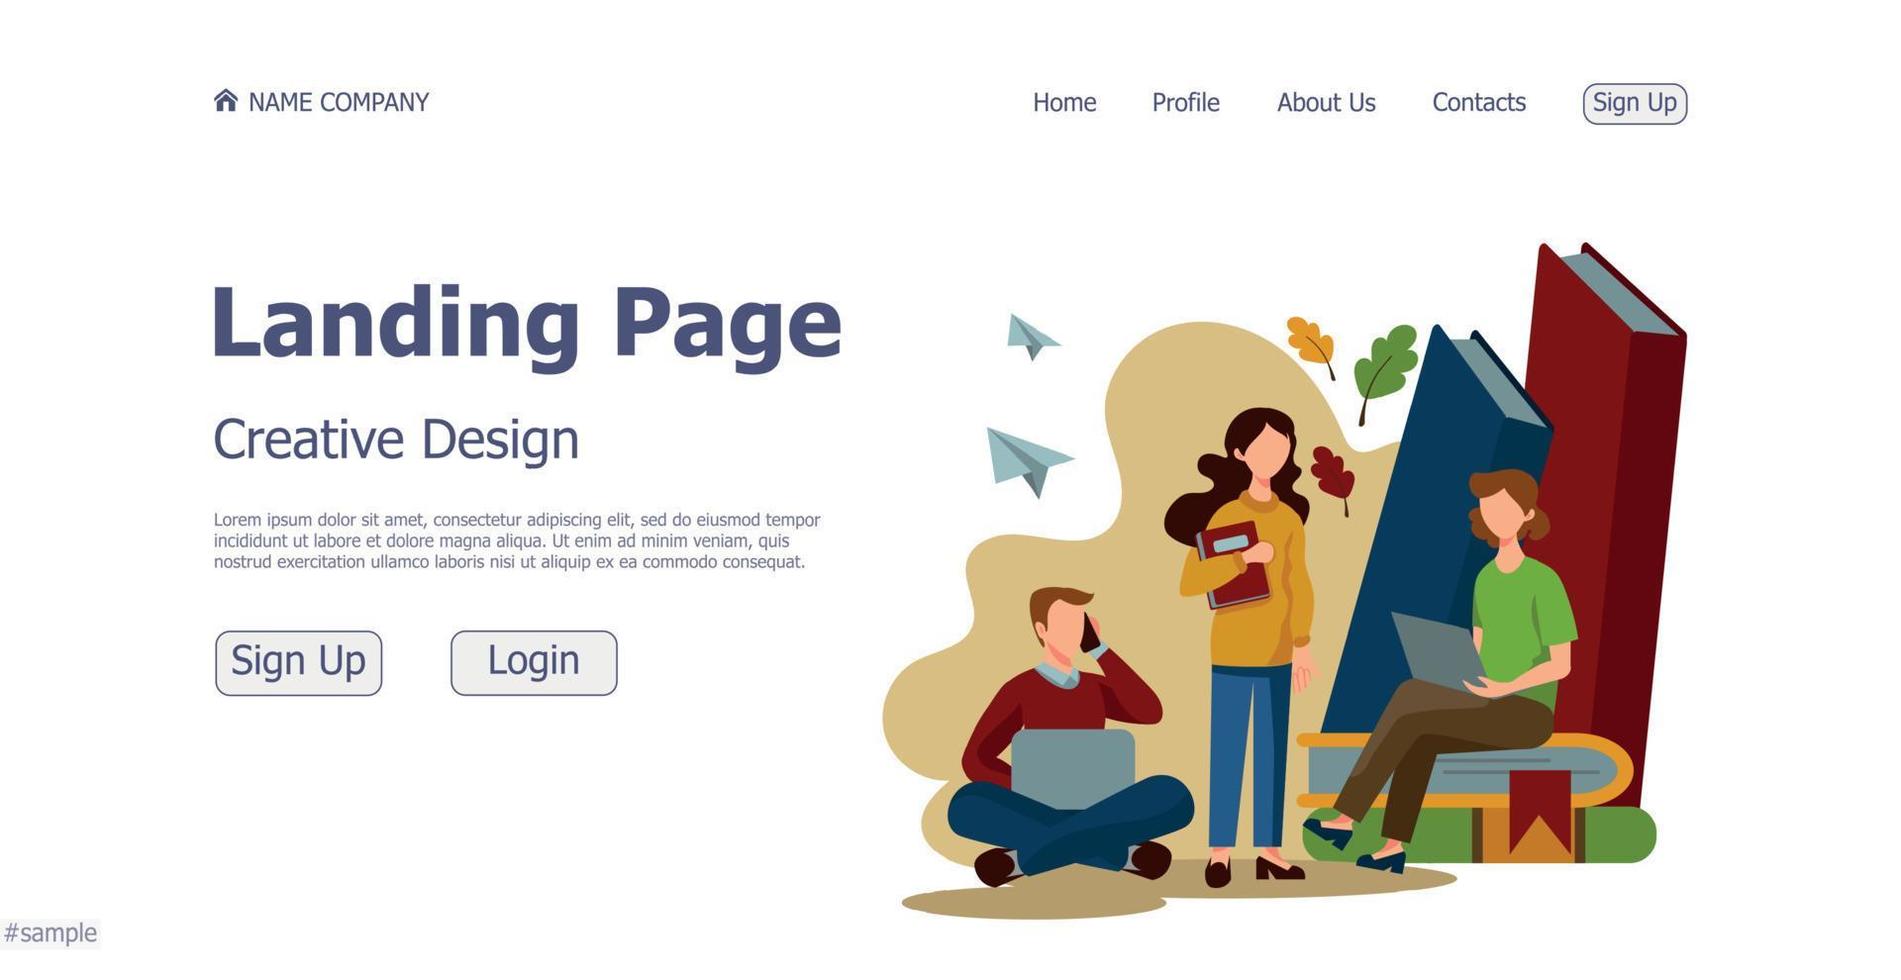 Konzept-Design-Konzept Online-Landing-Page-Website der Schule - Vektor